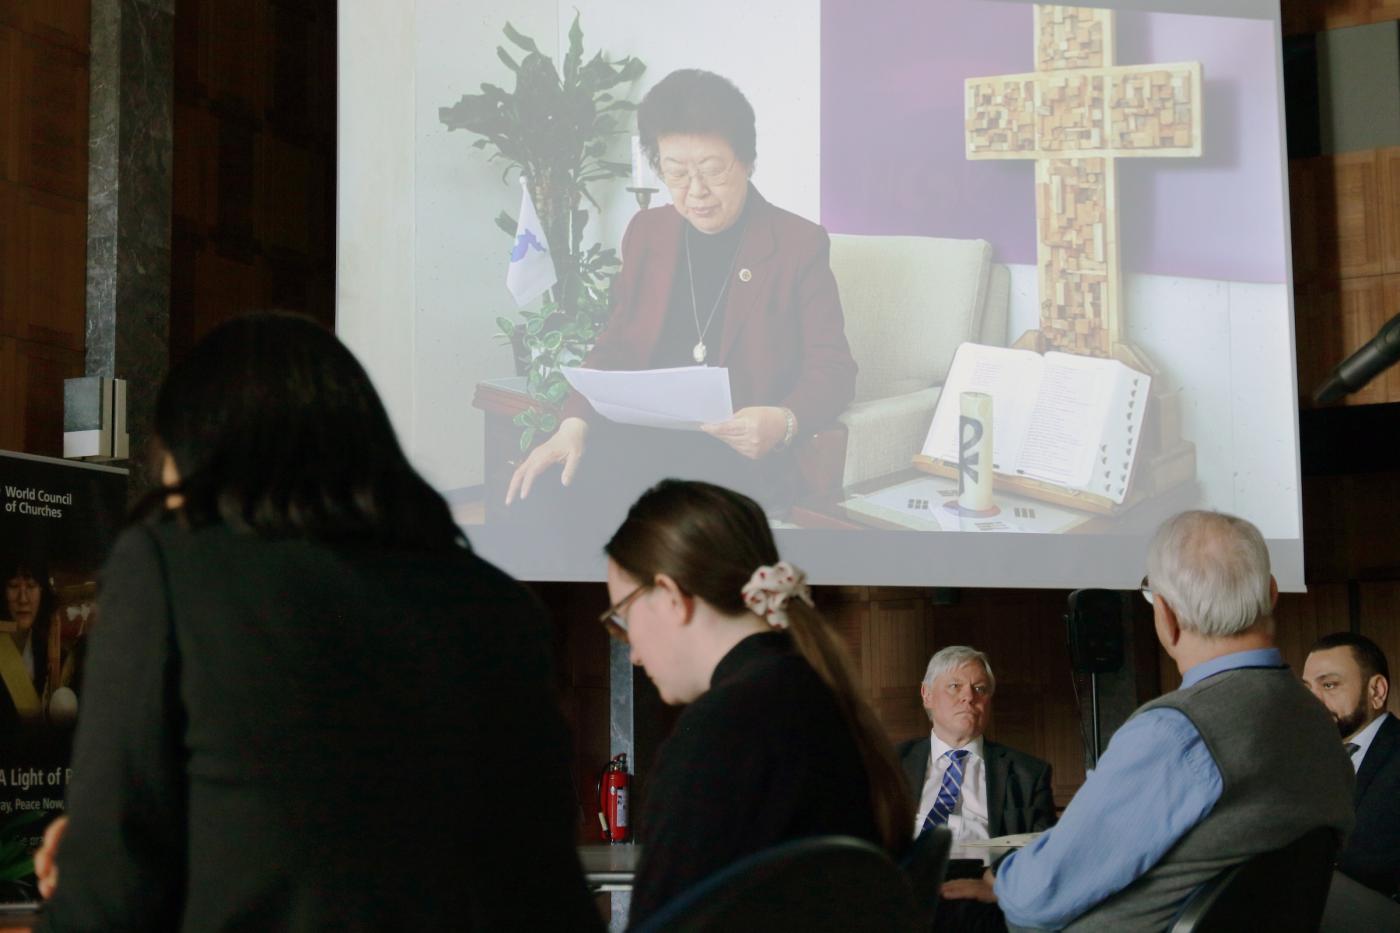 La oración por la paz en la península de Corea de la Rev. Dra. Sang Chang, presidenta del CMI para Asia, desde Seúl. Fotografía: Ivars Kupcis/CMI